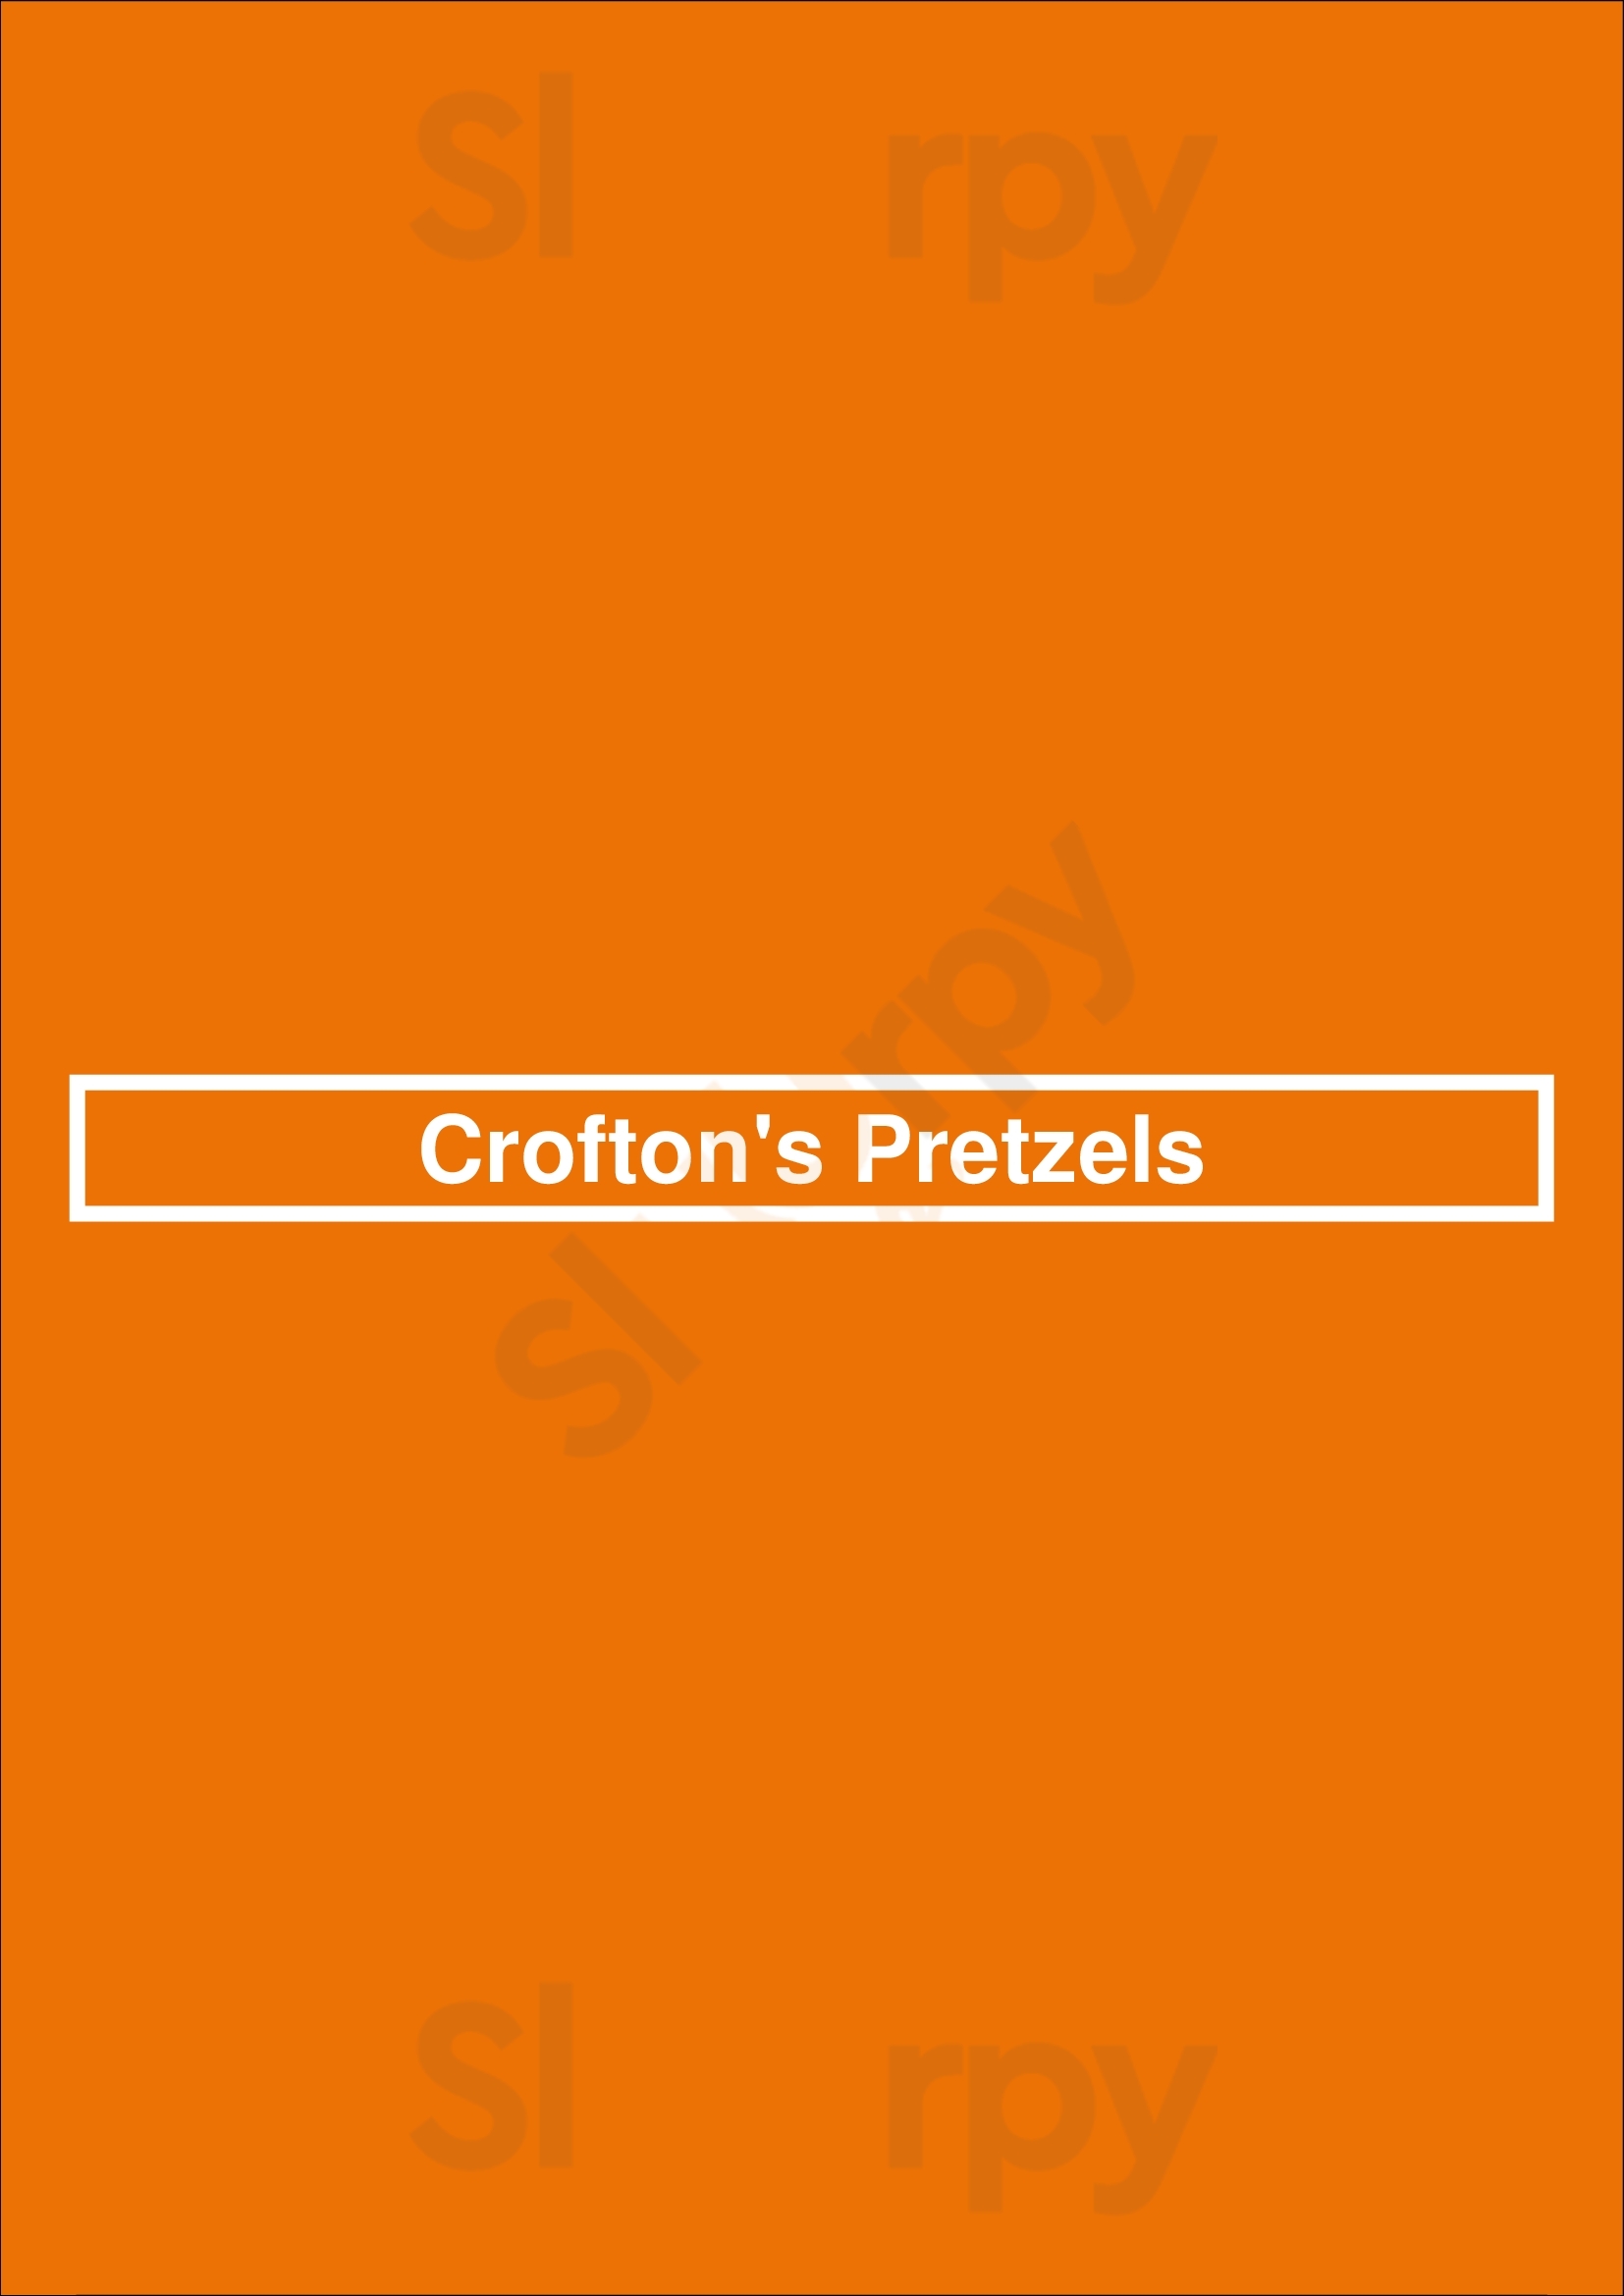 Crofton's Pretzels Wilmington Menu - 1